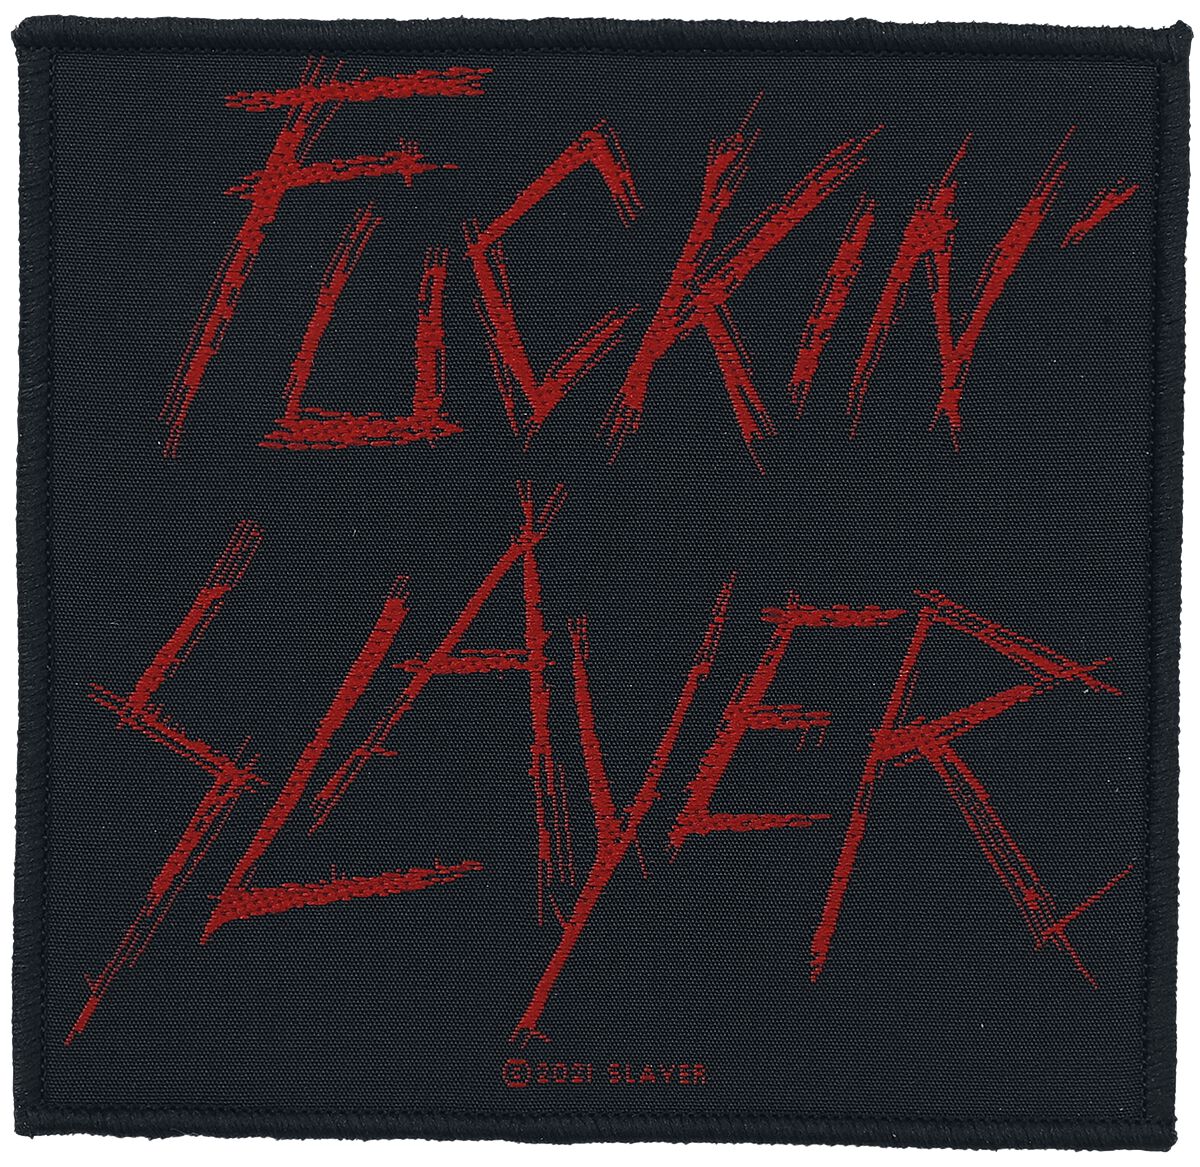 Slayer Patch - schwarz/rot  - Lizenziertes Merchandise!